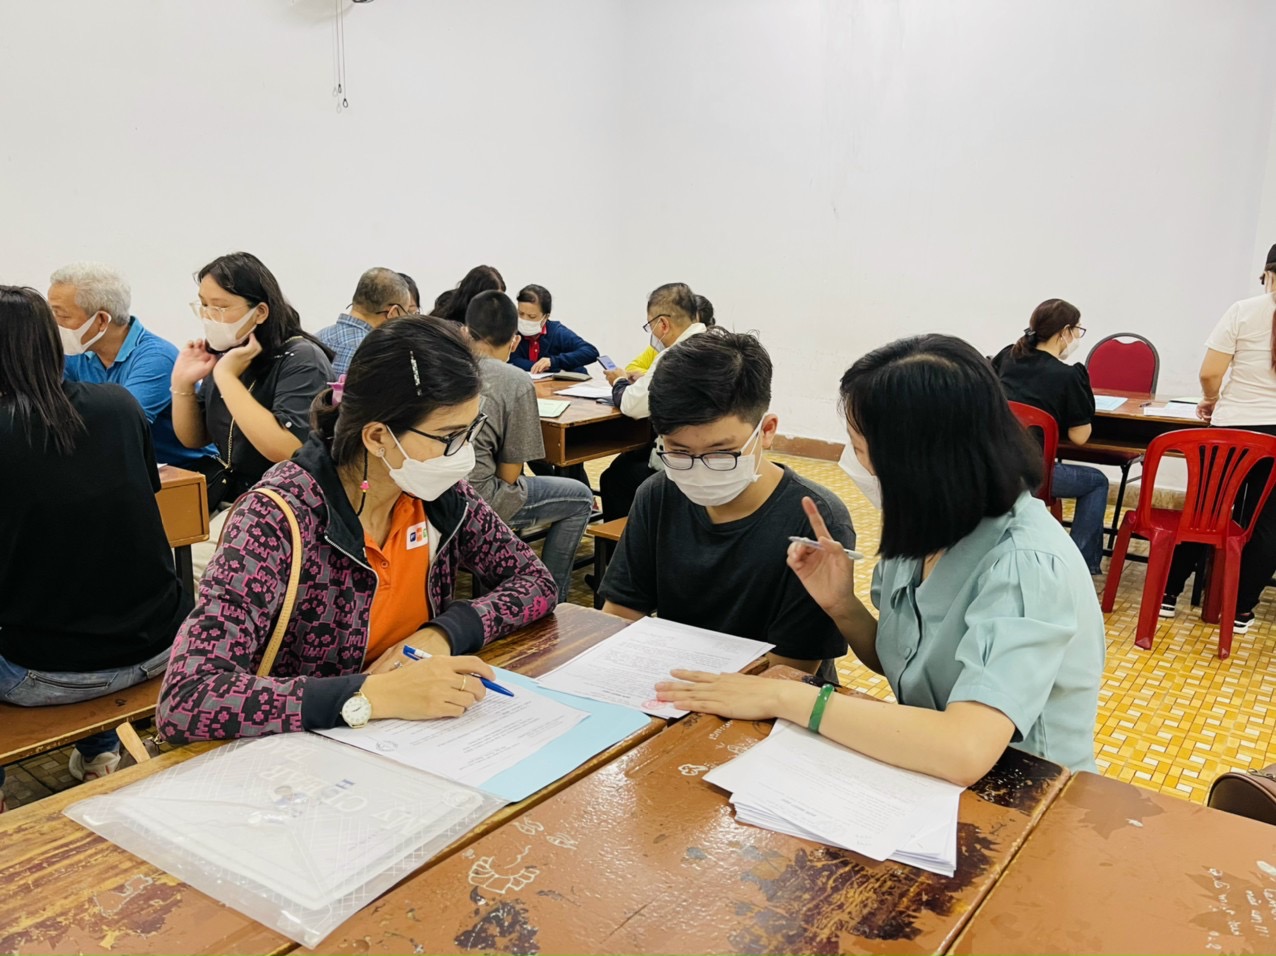 Giám đốc Sở GD-ĐT TPHCM Nguyễn Văn Hiếu yêu cầu trường học rà soát lại học sinh gặp khó khăn về SGK để có hình thức hỗ trợ